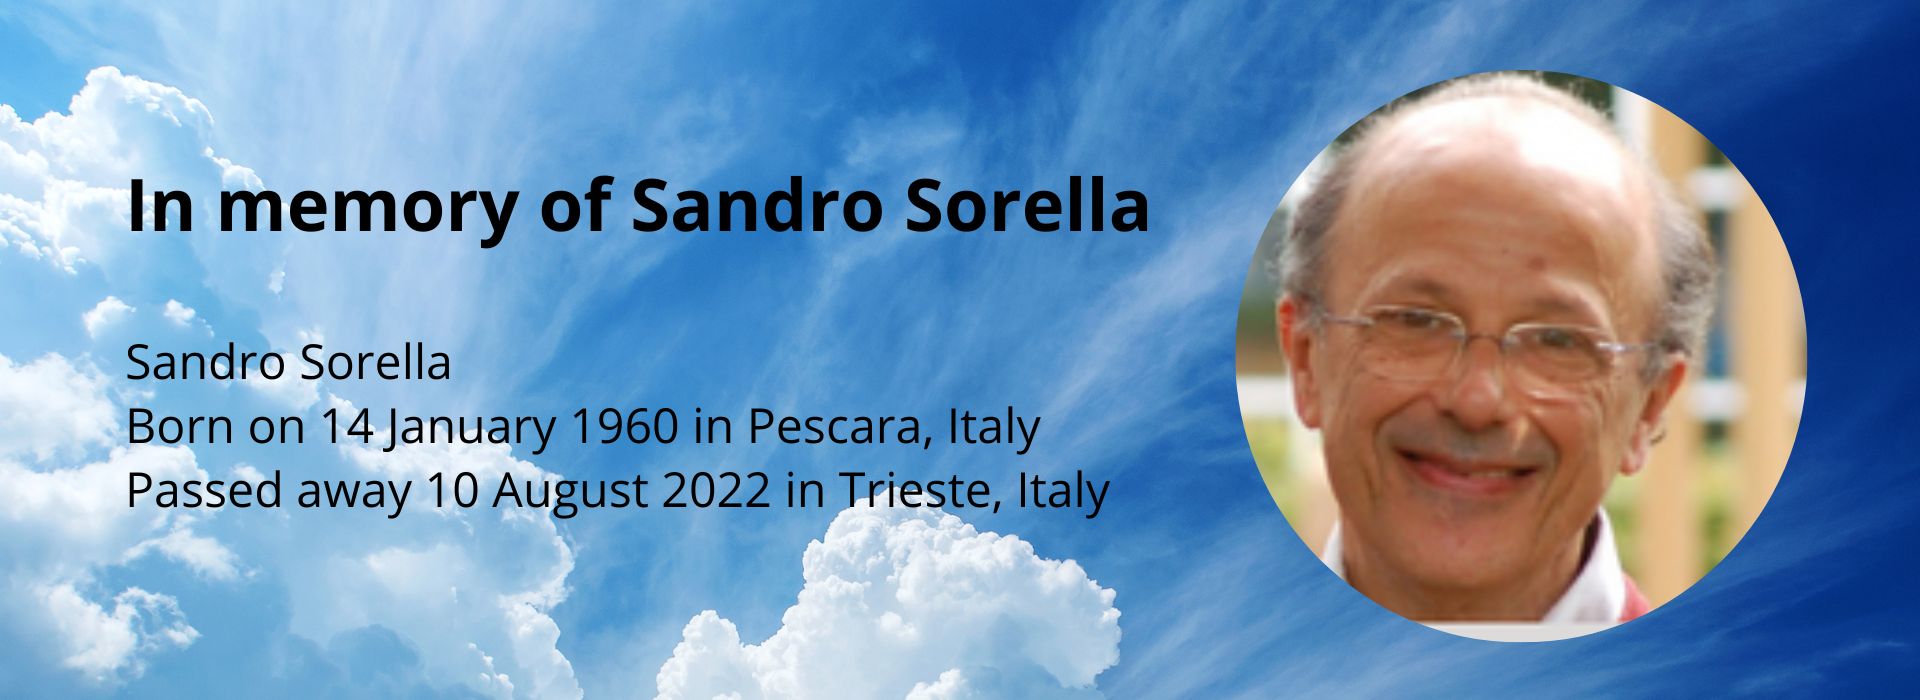 In memory of Sandro Sorella